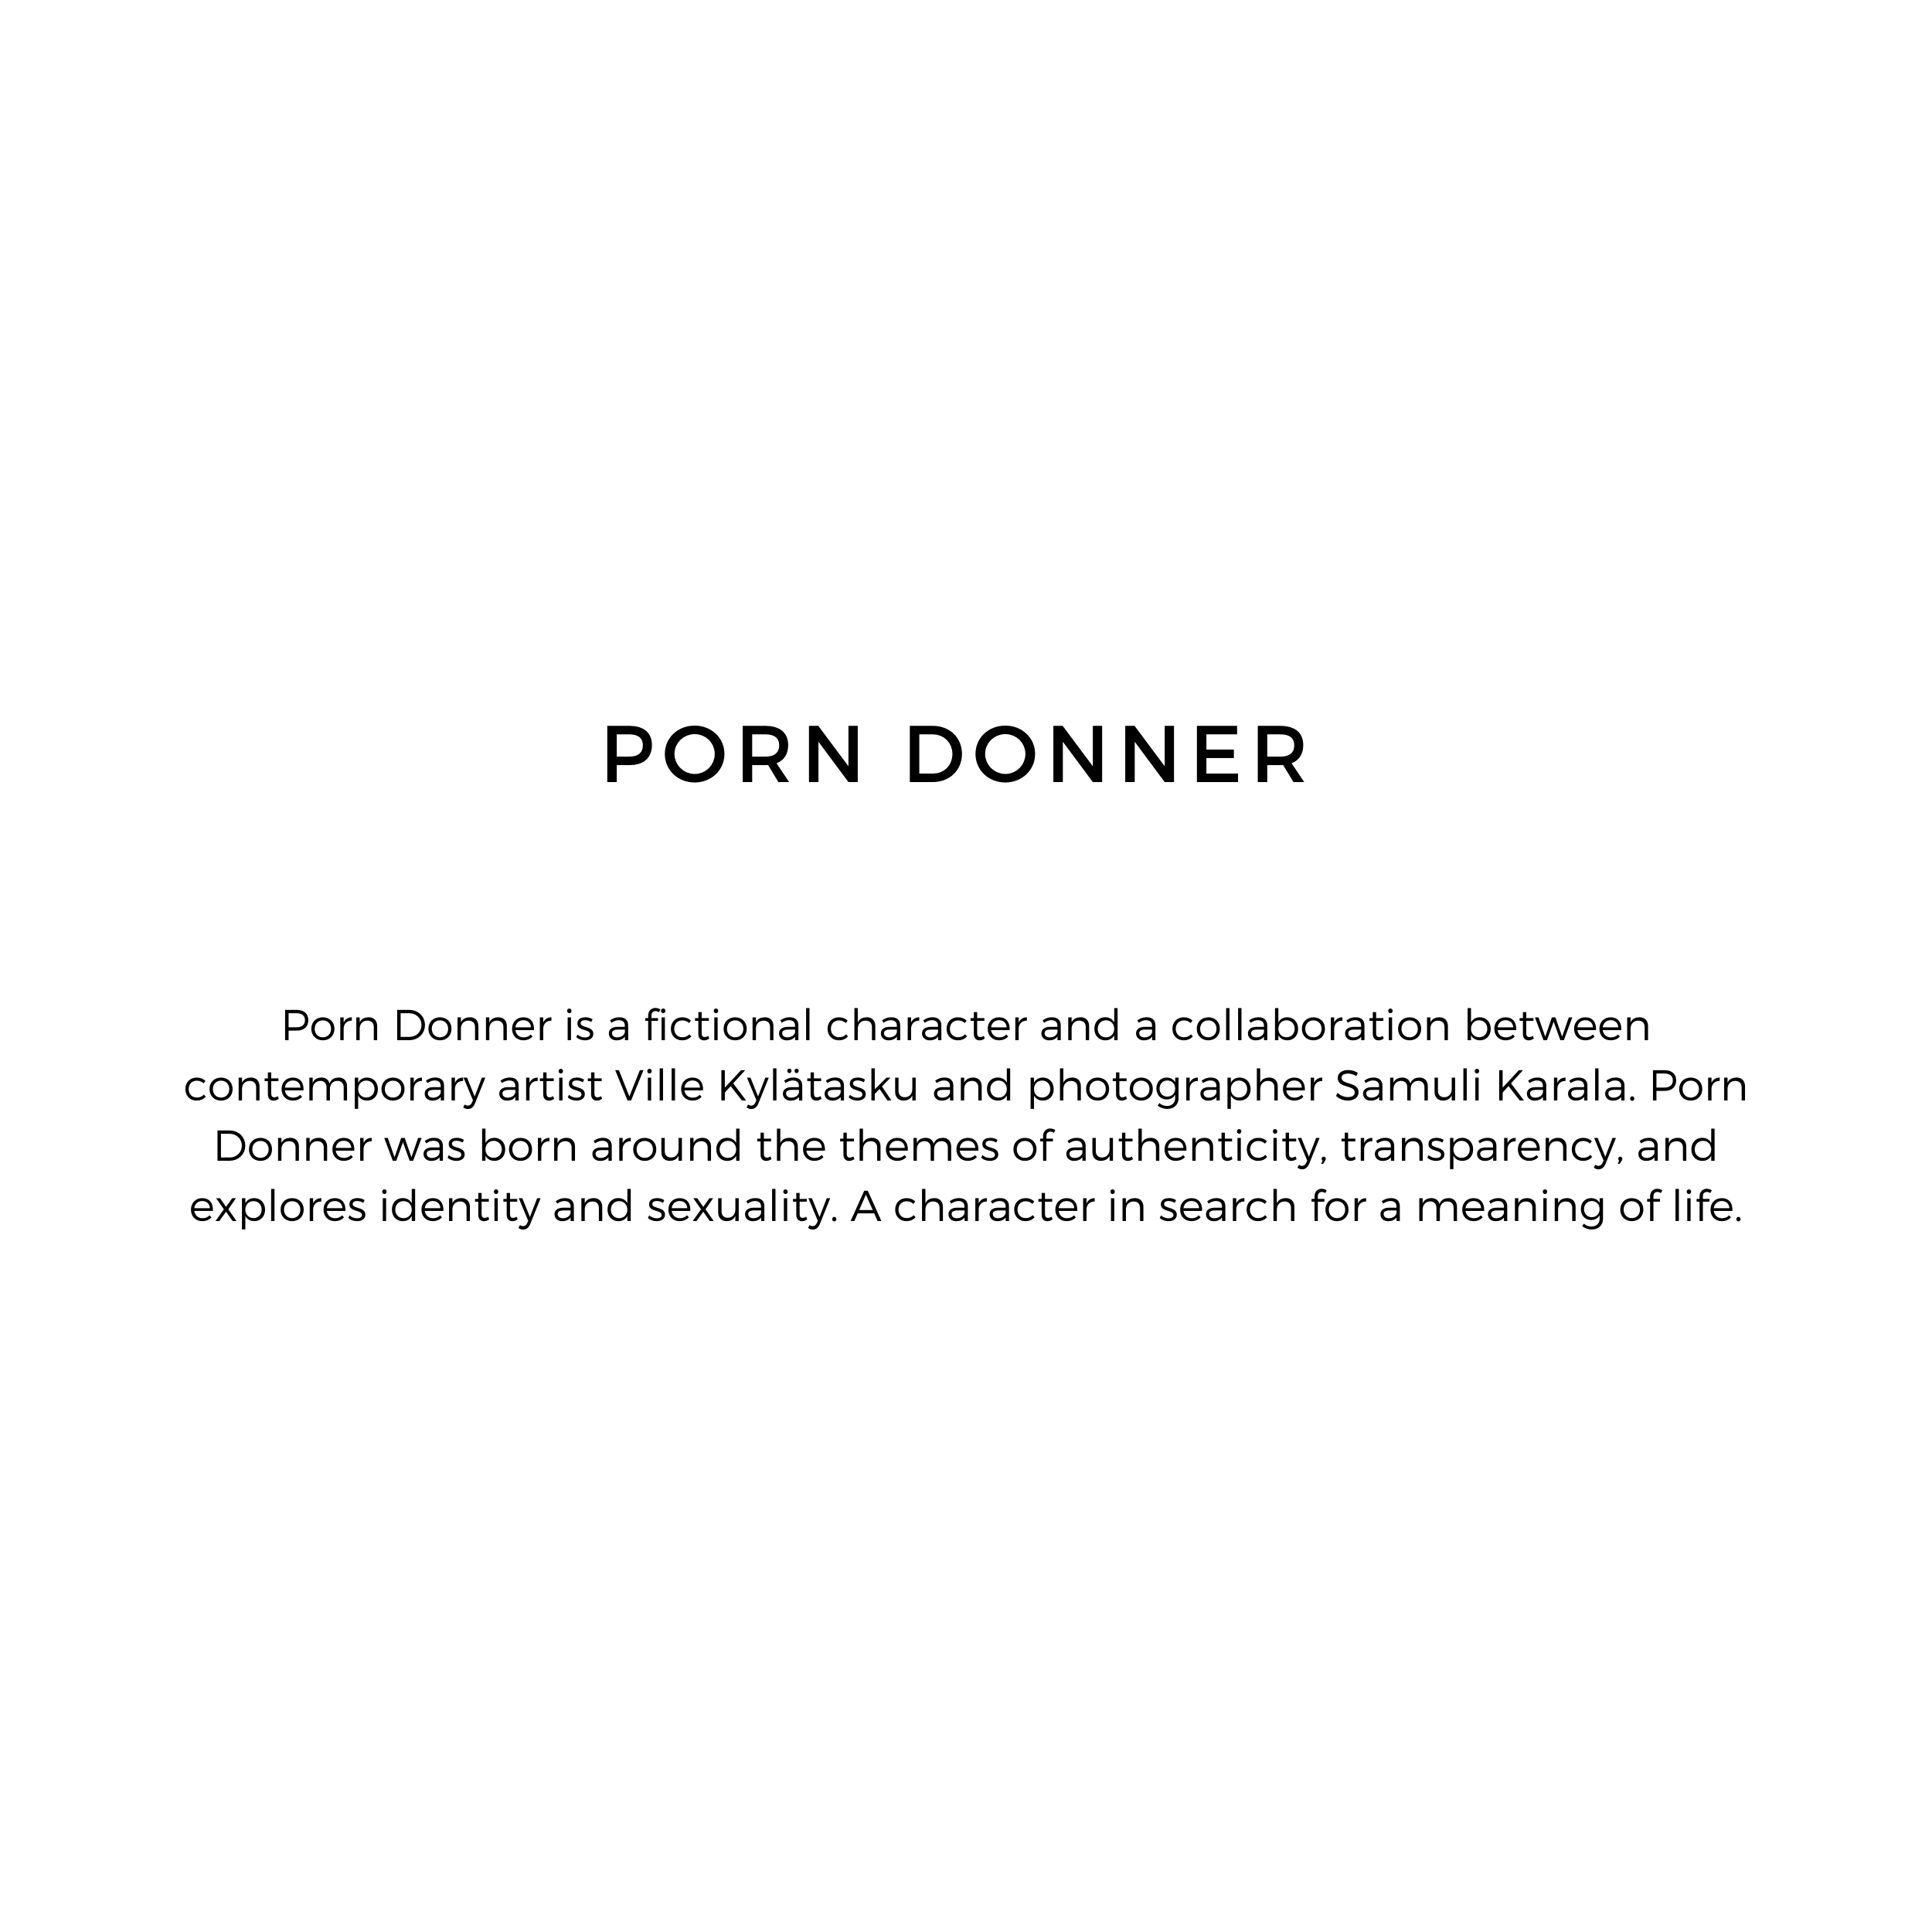 PORN-DONNER-TEXT